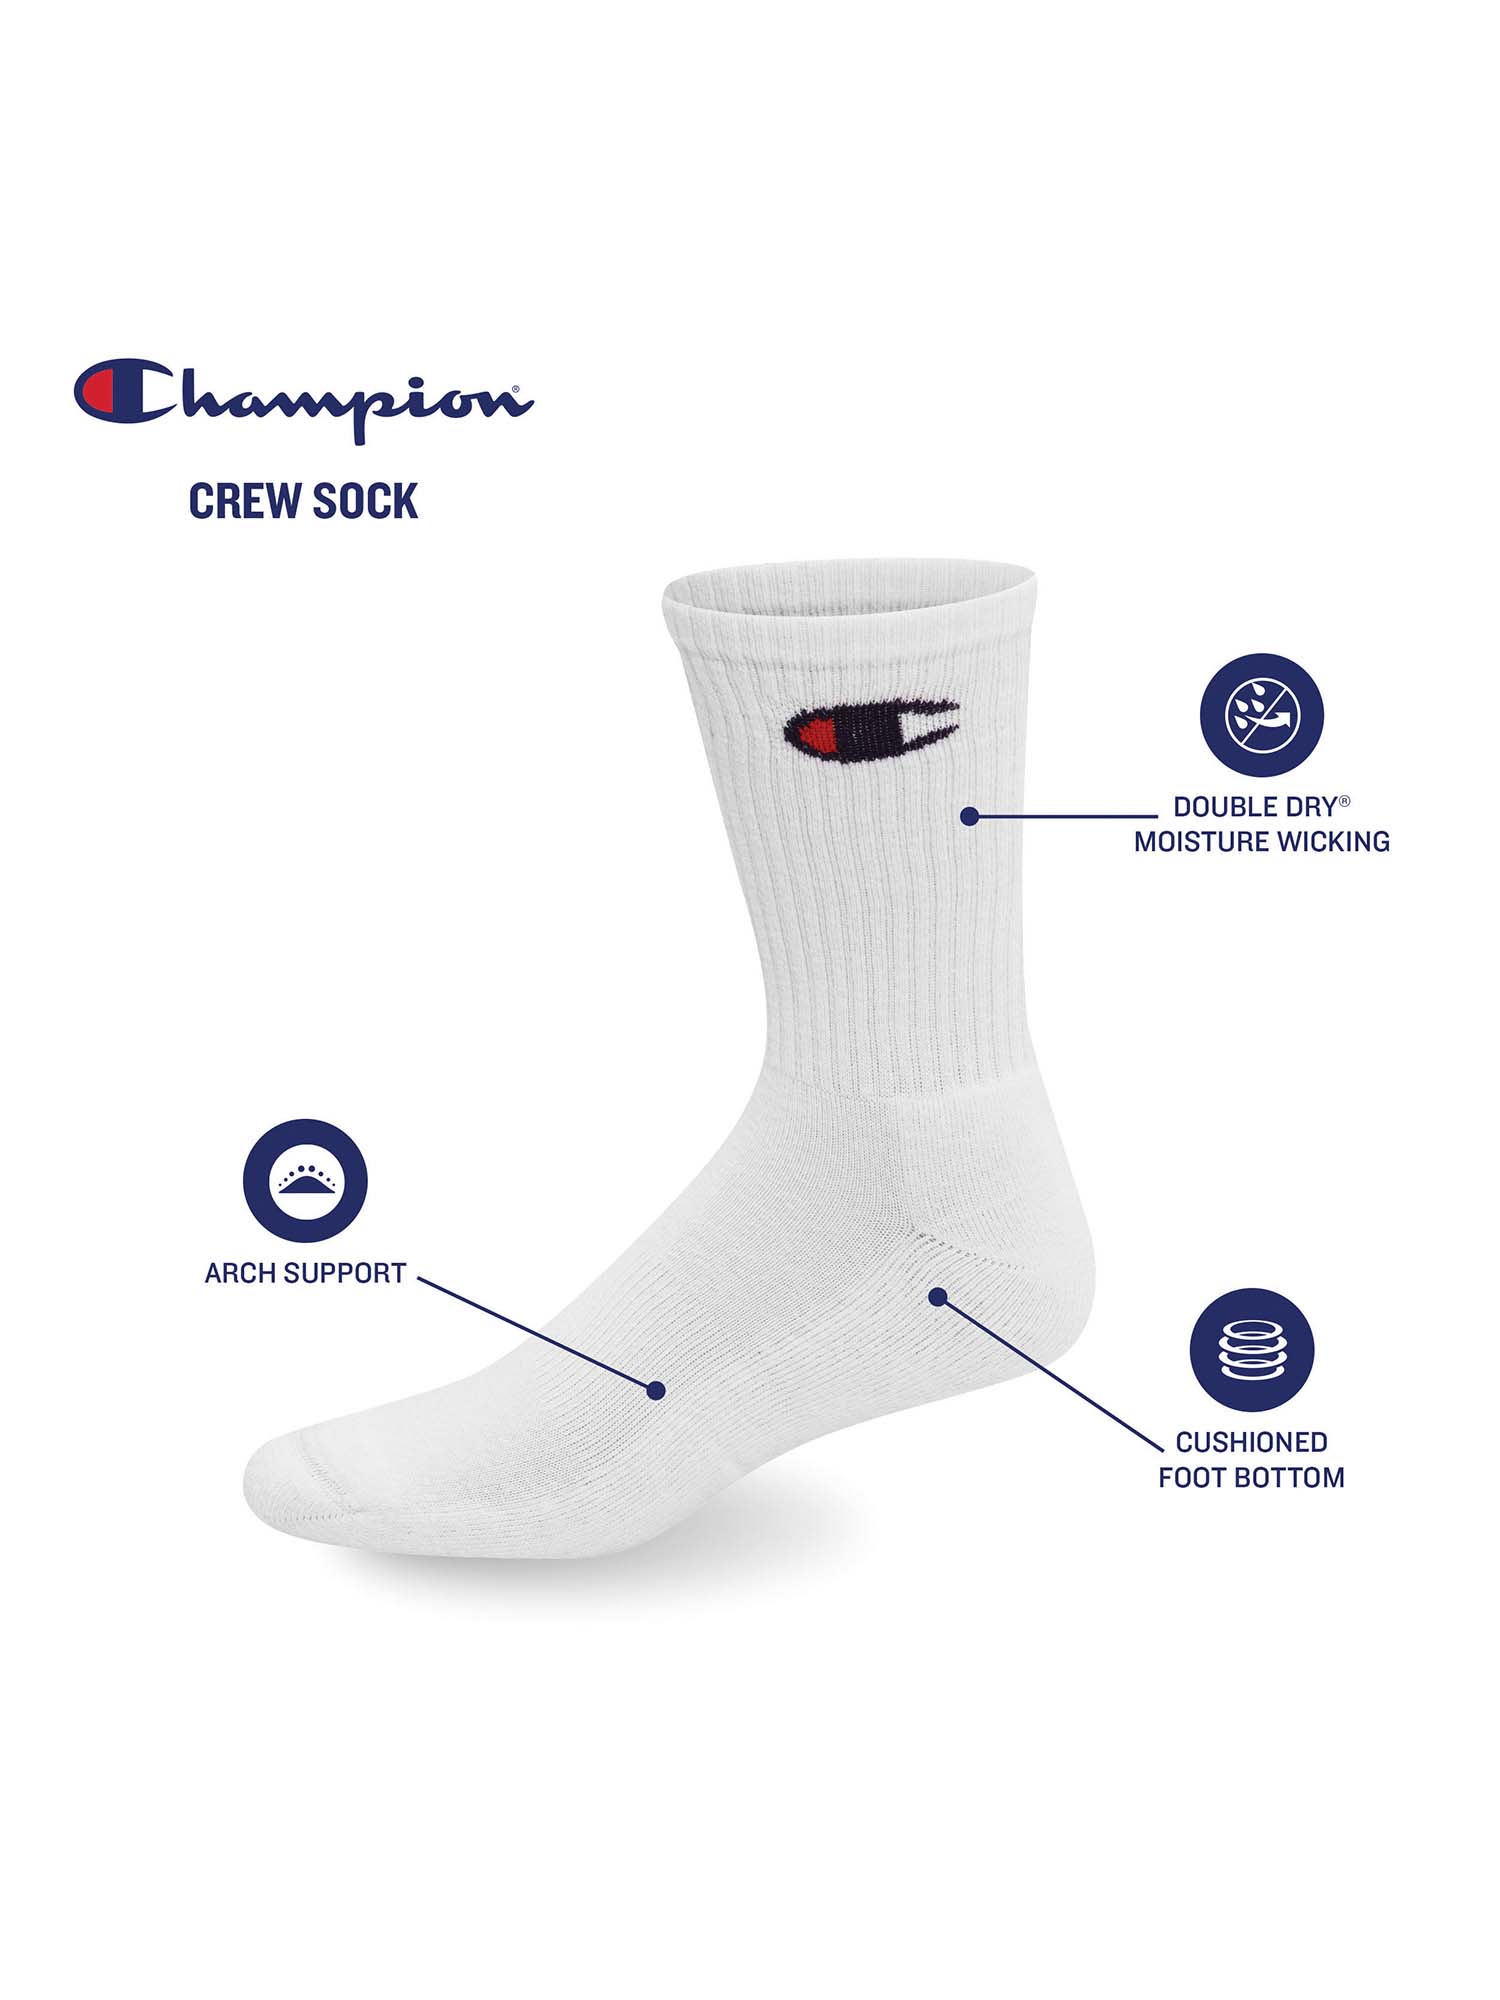 Champion Men's Crew Socks Gift Box, 6 Pack - image 4 of 7